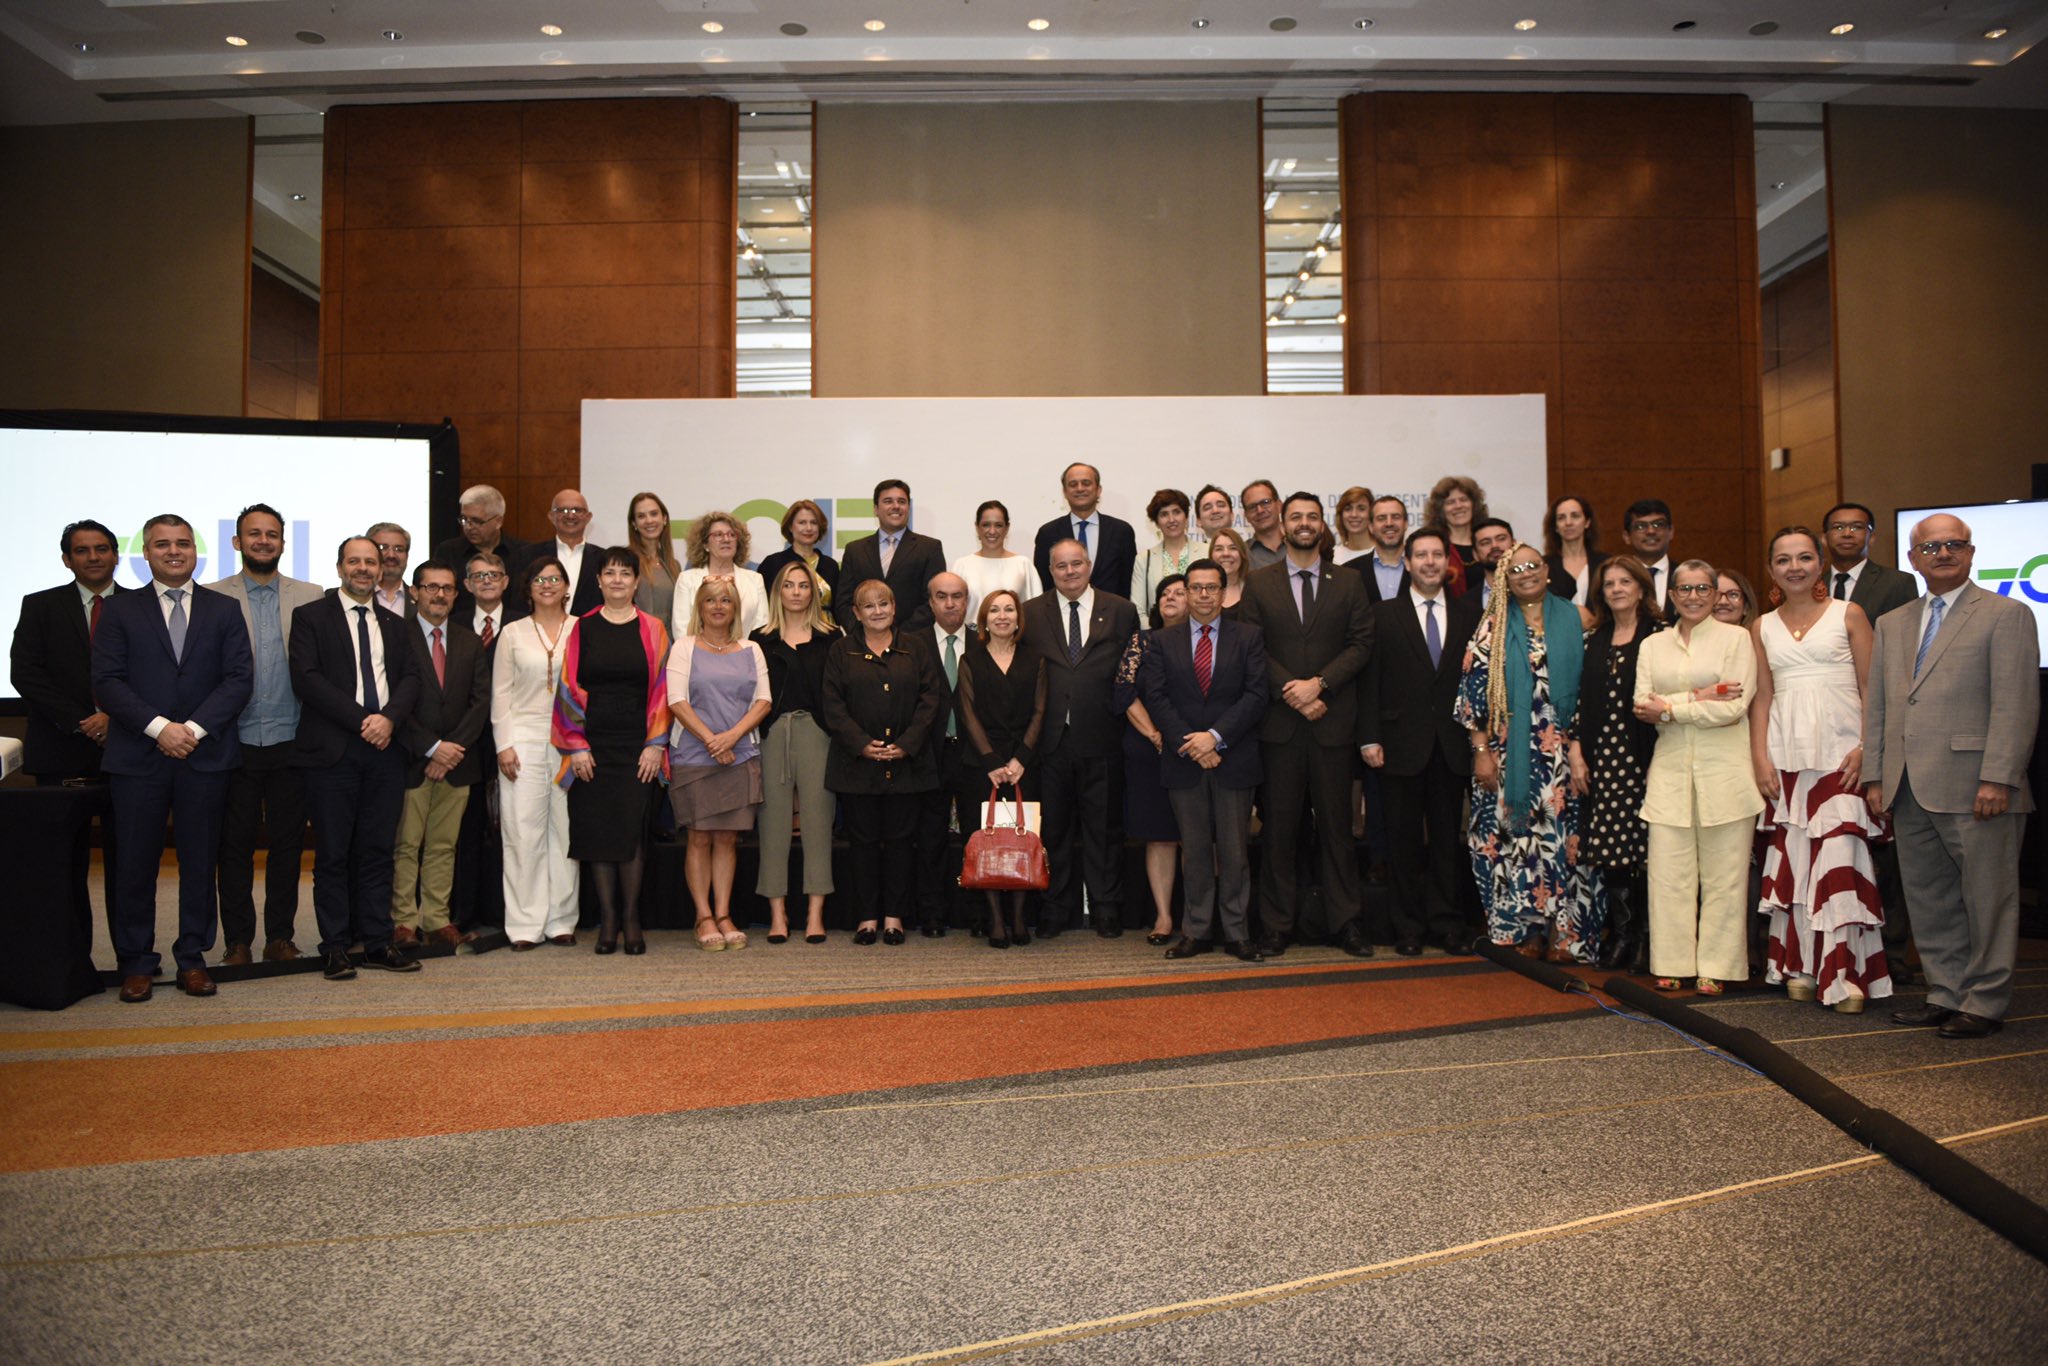 OEI celebra en Brasil, por primera vez, un encuentro de alto nivel de cultura de Iberoamérica